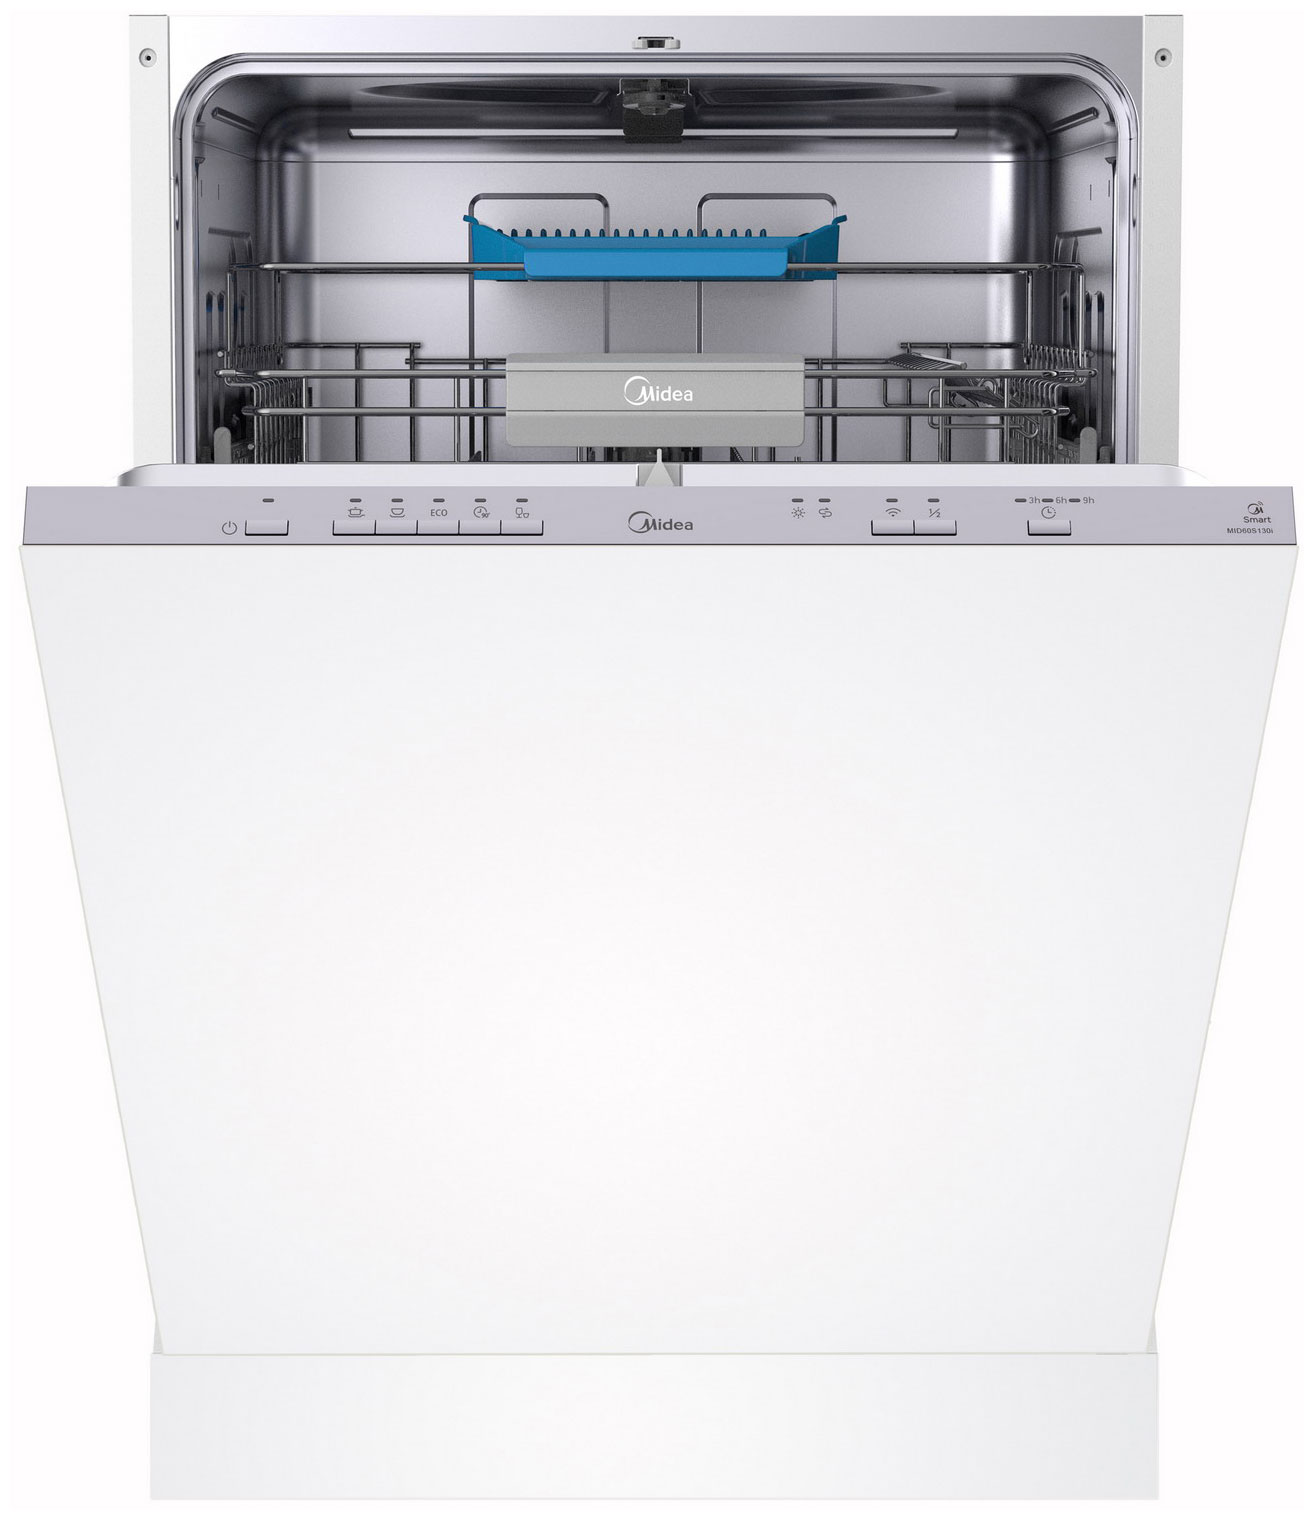 Встраиваемая посудомоечная машина Midea MID60S130i встраиваемая посудомоечная машина midea mid60s350i